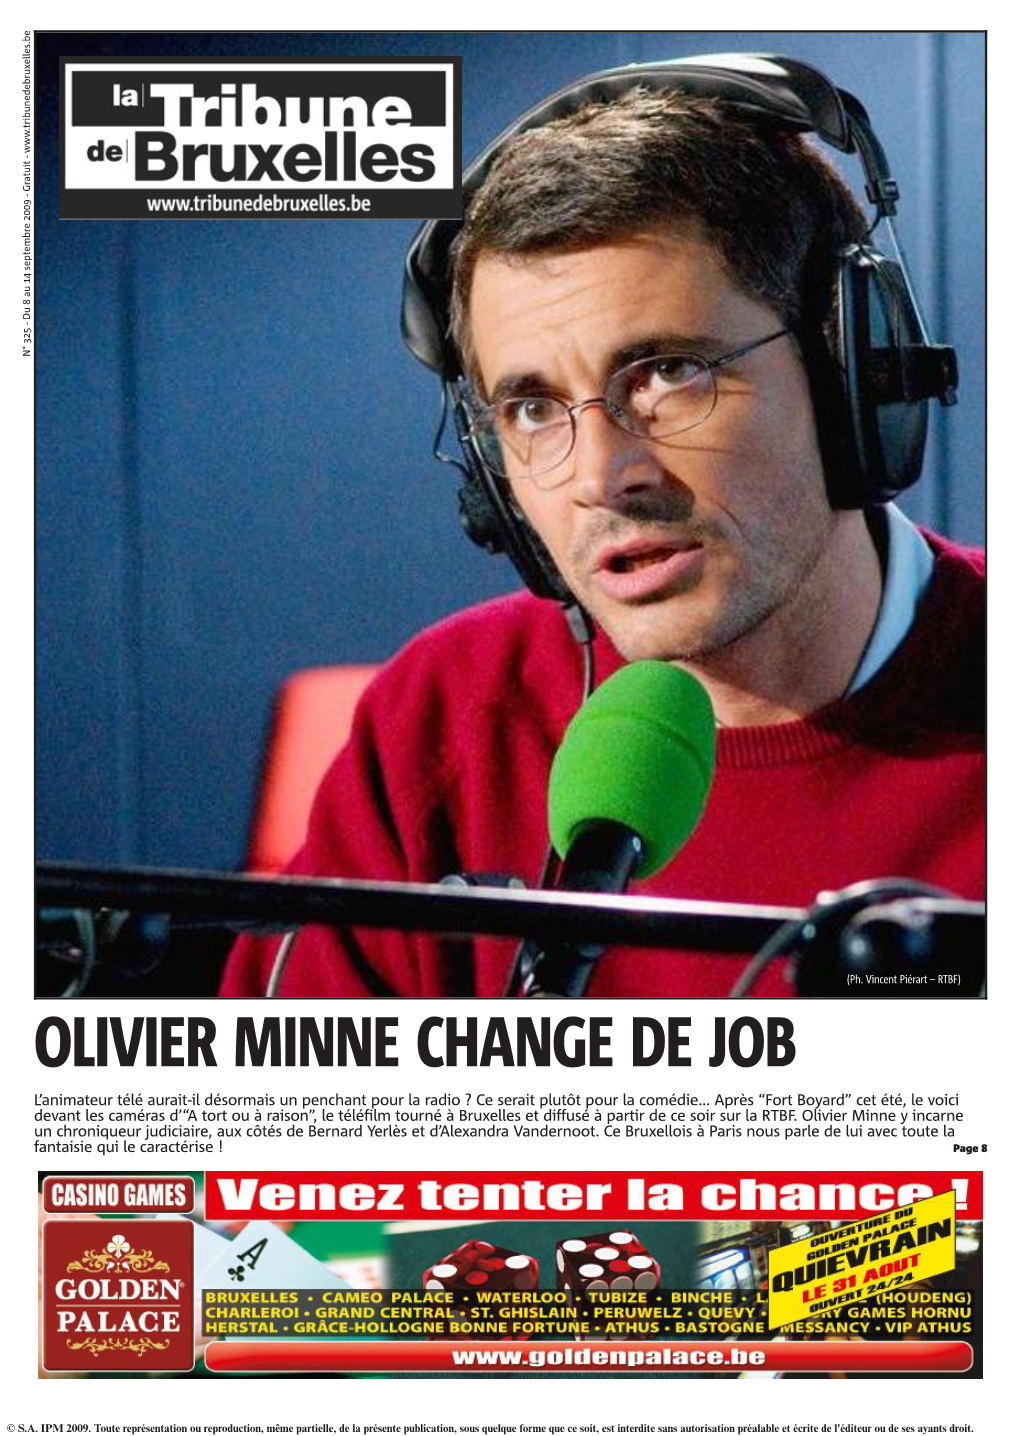 Olivier Minne Change De